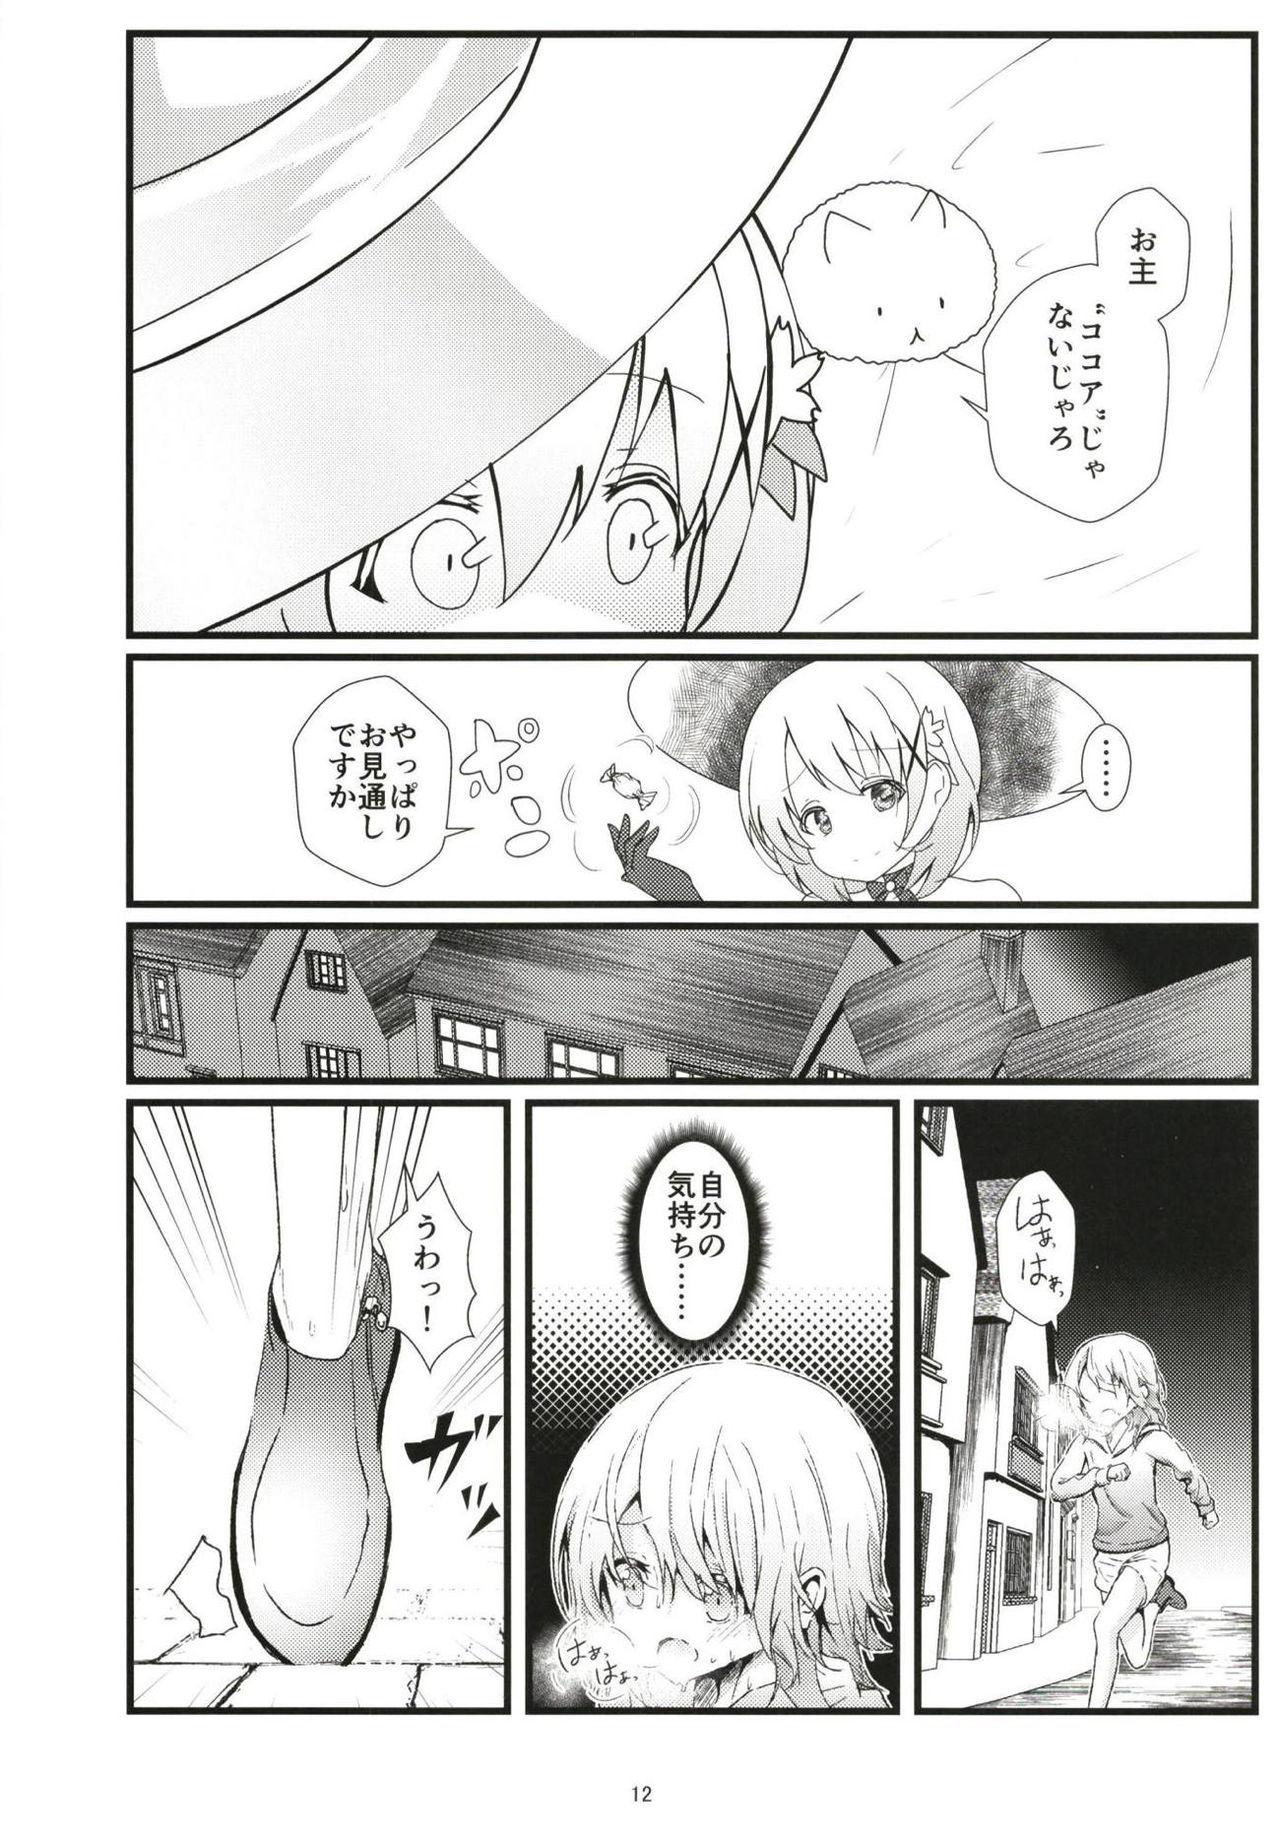 Duro What Found There - Gochuumon wa usagi desu ka Nurse - Page 11